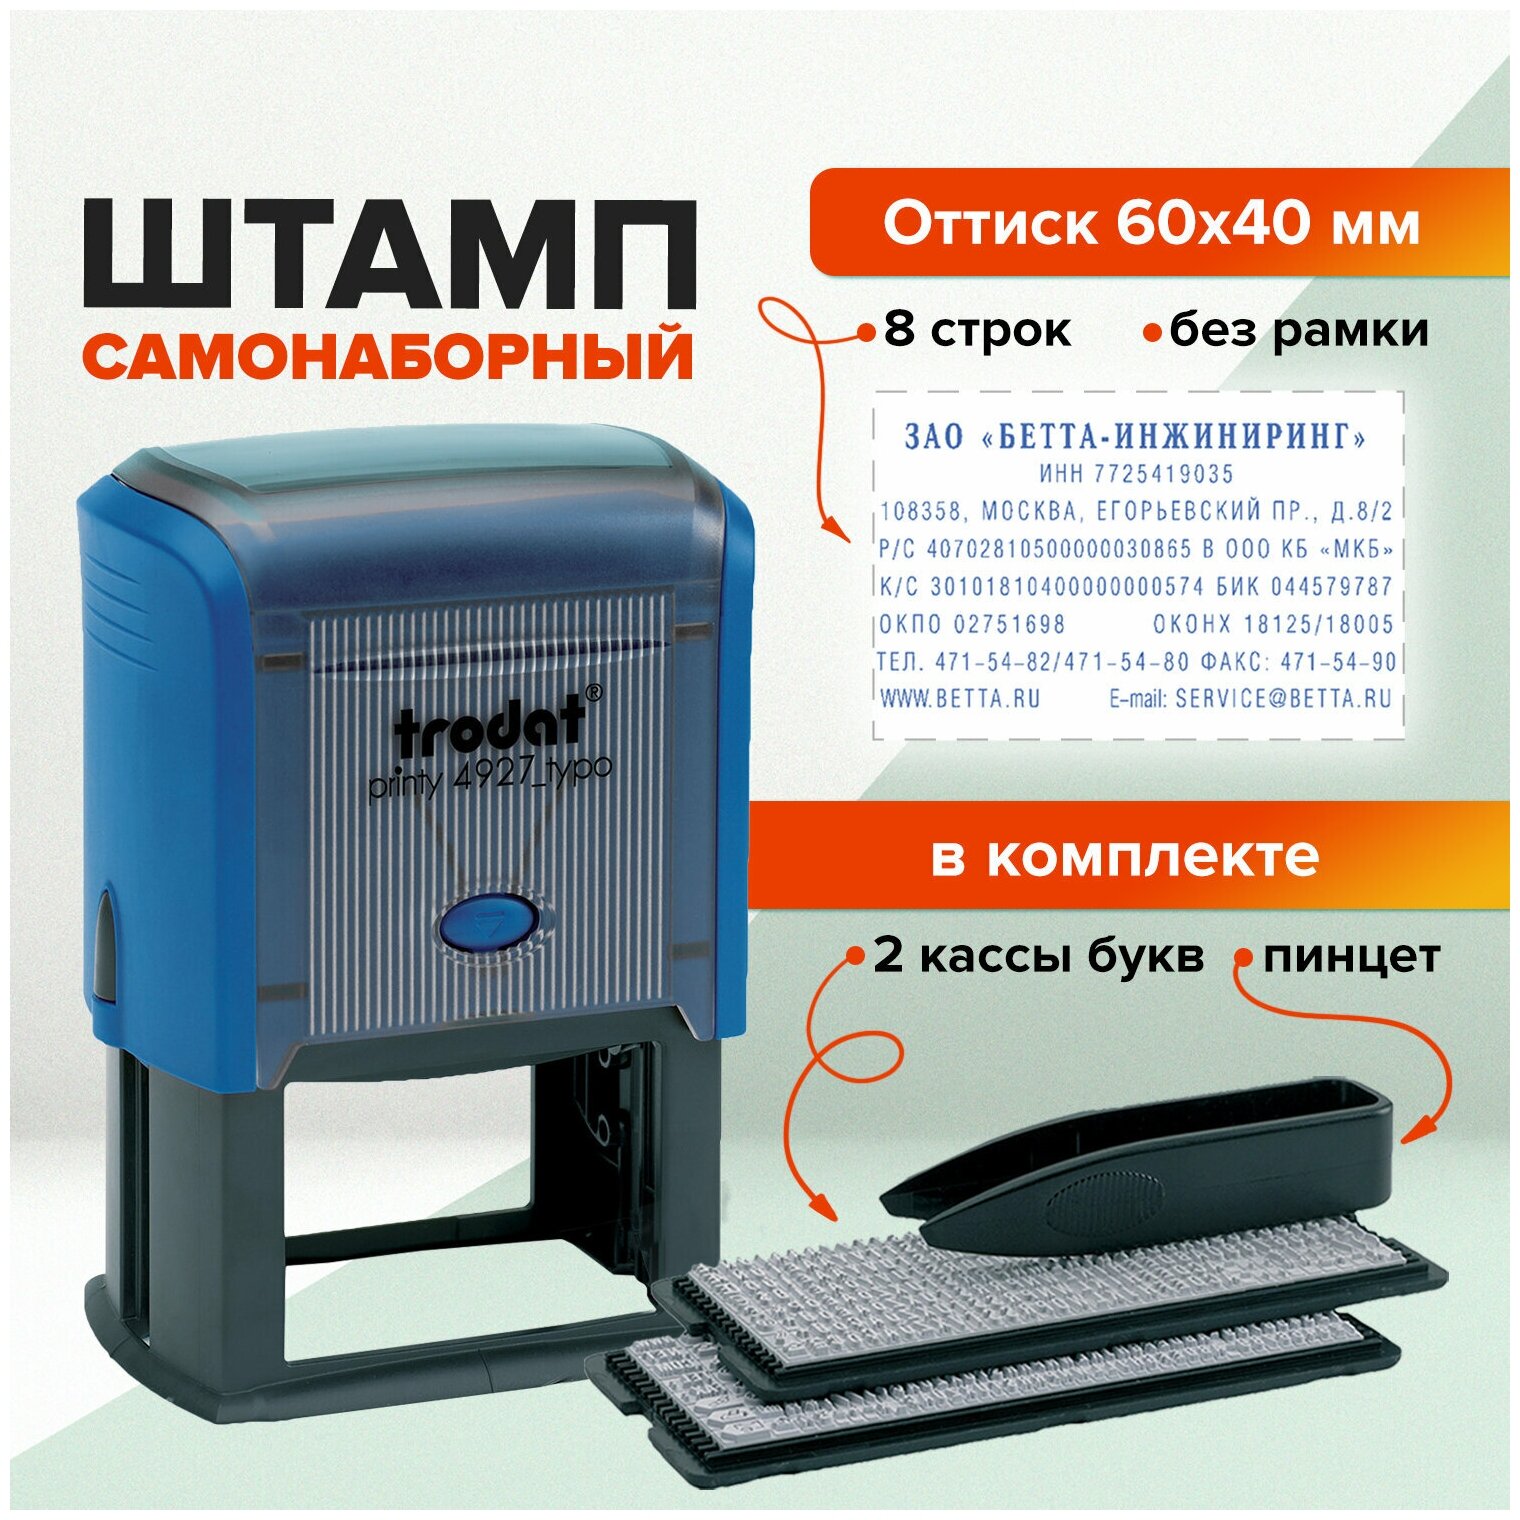 Самонаборный штамп автоматический TRODAT , оттиск 60 х 40 мм, шрифт 3.1/2.2 мм, прямоугольный - фото №3